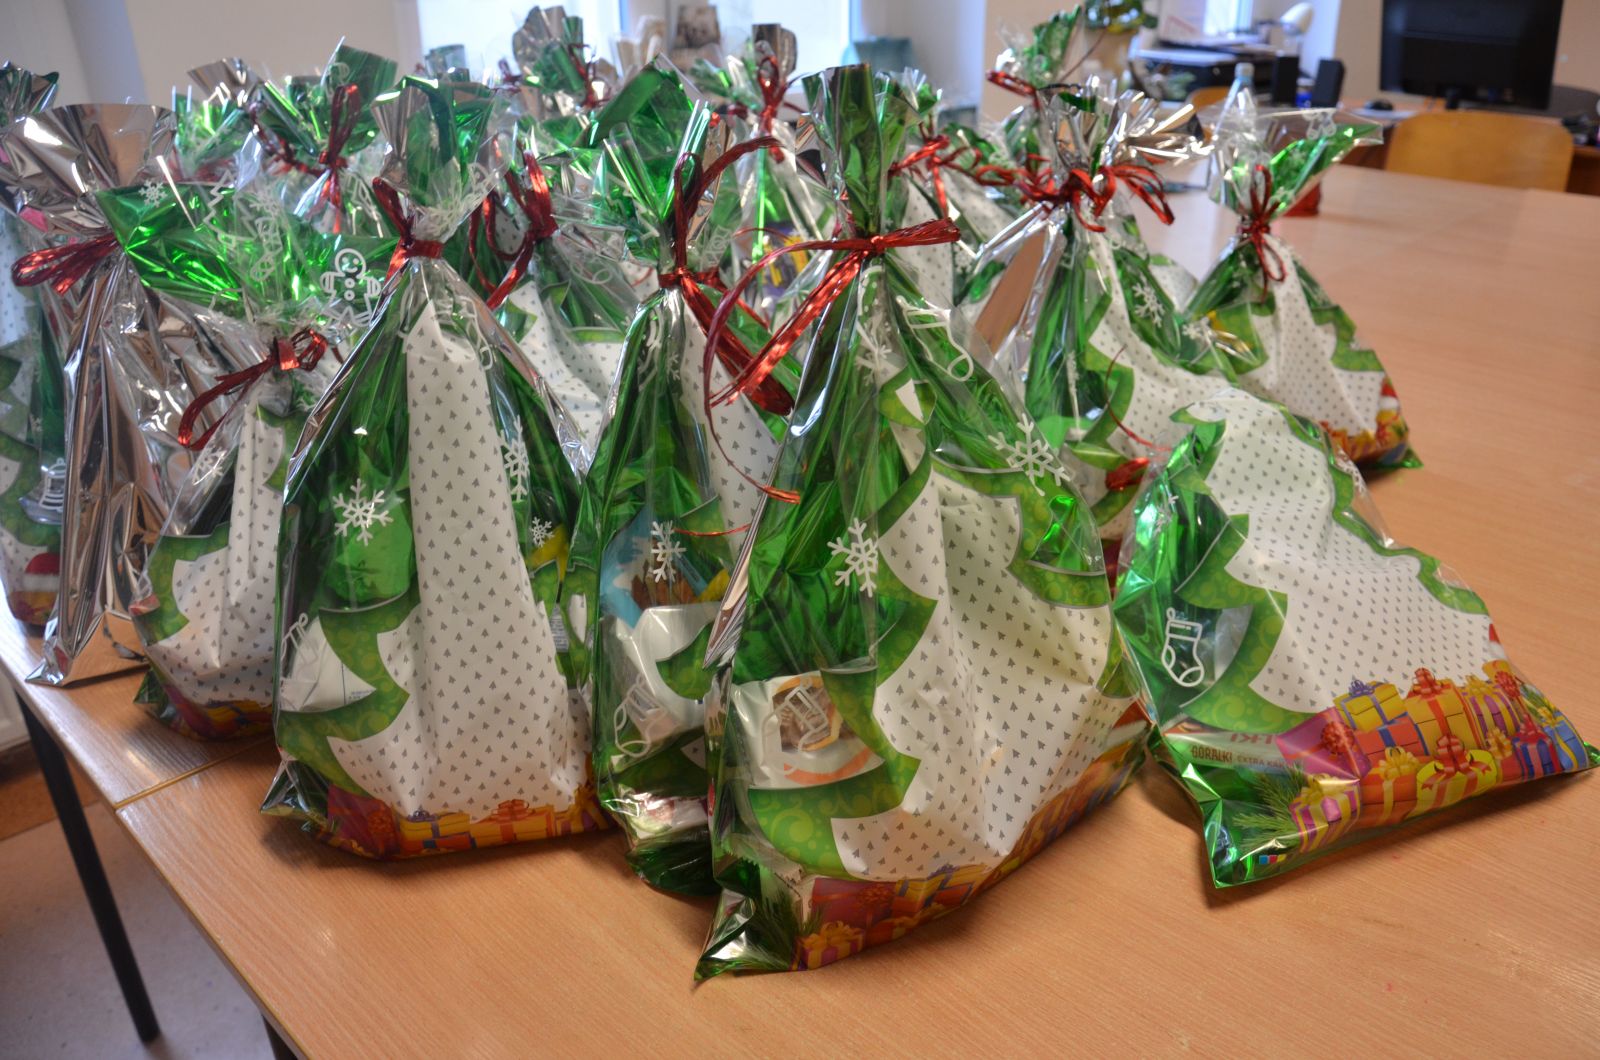 Na zdjeciu widać paczki przygotowane do rozdania mieszkankom w dniu św. Mikołaja. Słodycze są popakowane w kolorowe szeleszczące torebeczki świąteczne.